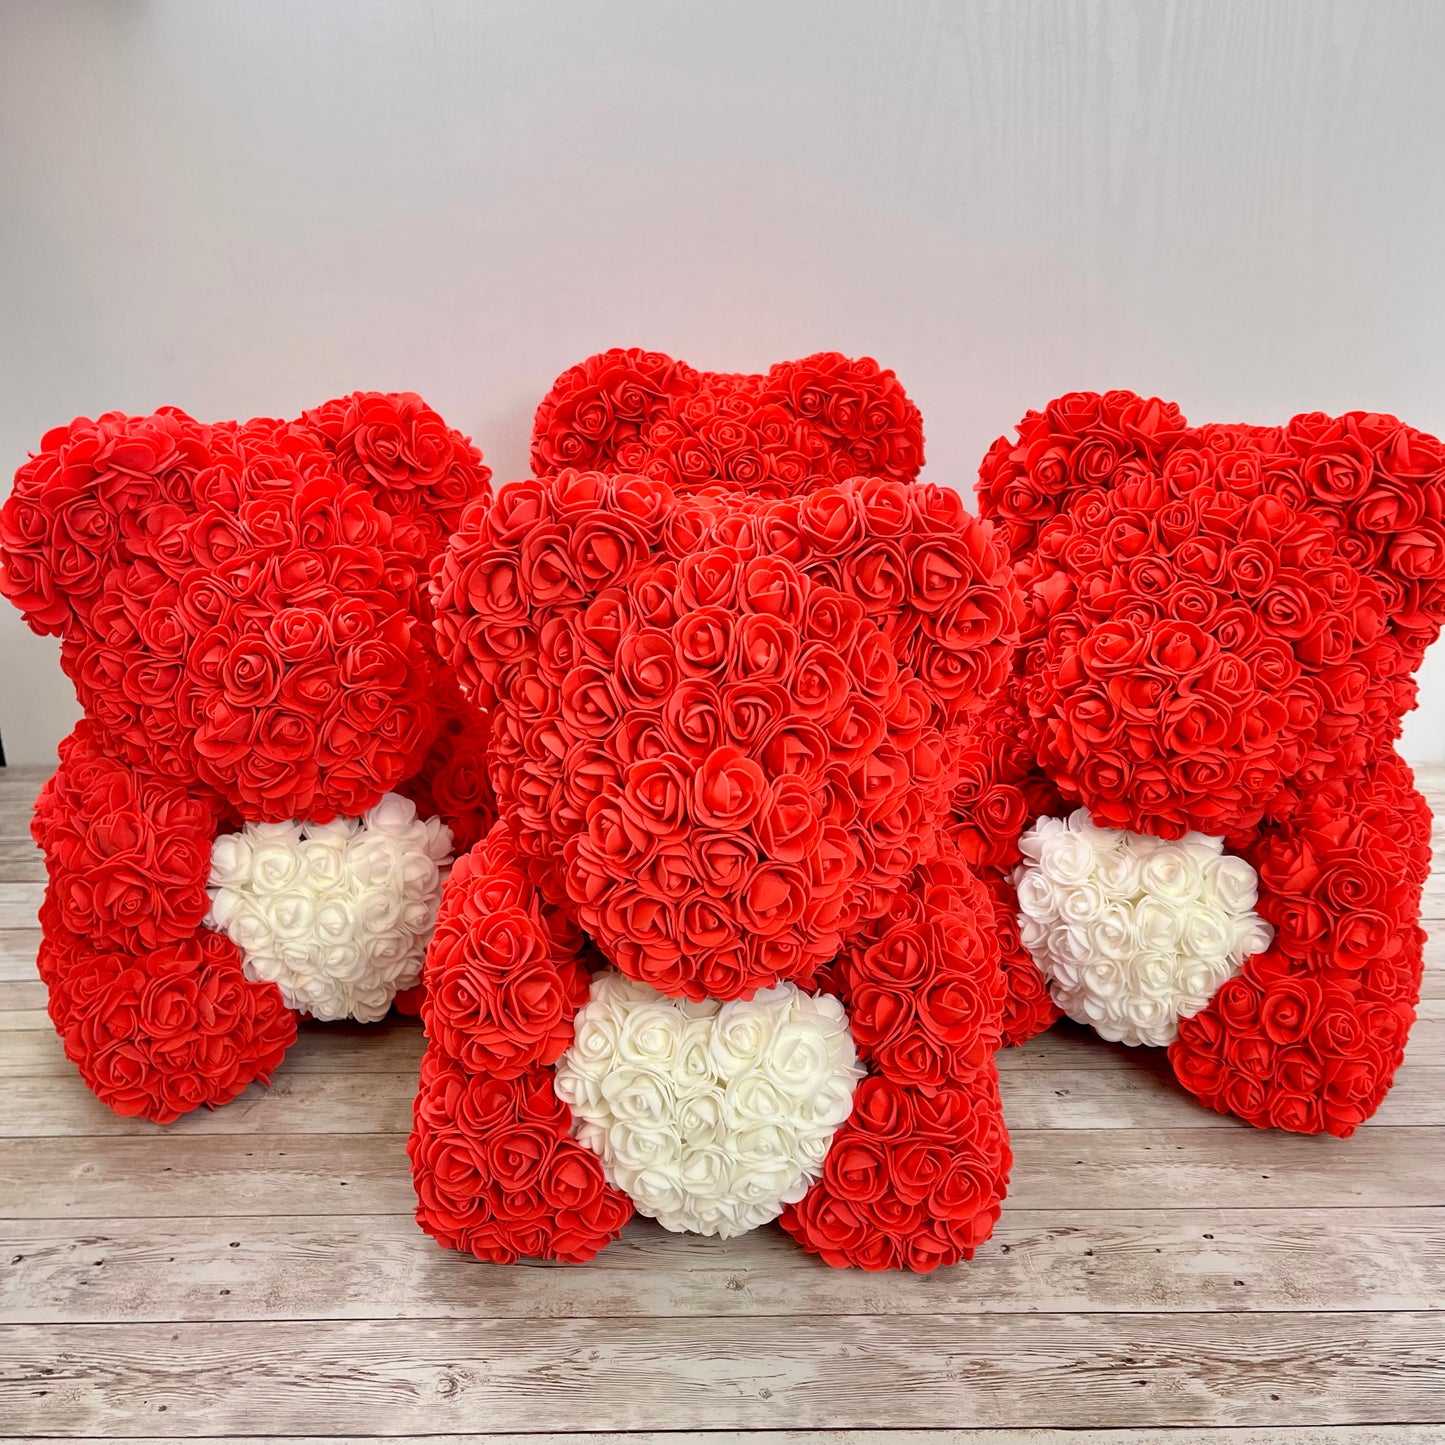 Rose Bear - Forever Red Rose Teddy Bears - Gift Boxed Bears- Rose Bear divider- Red Bear with White Heart